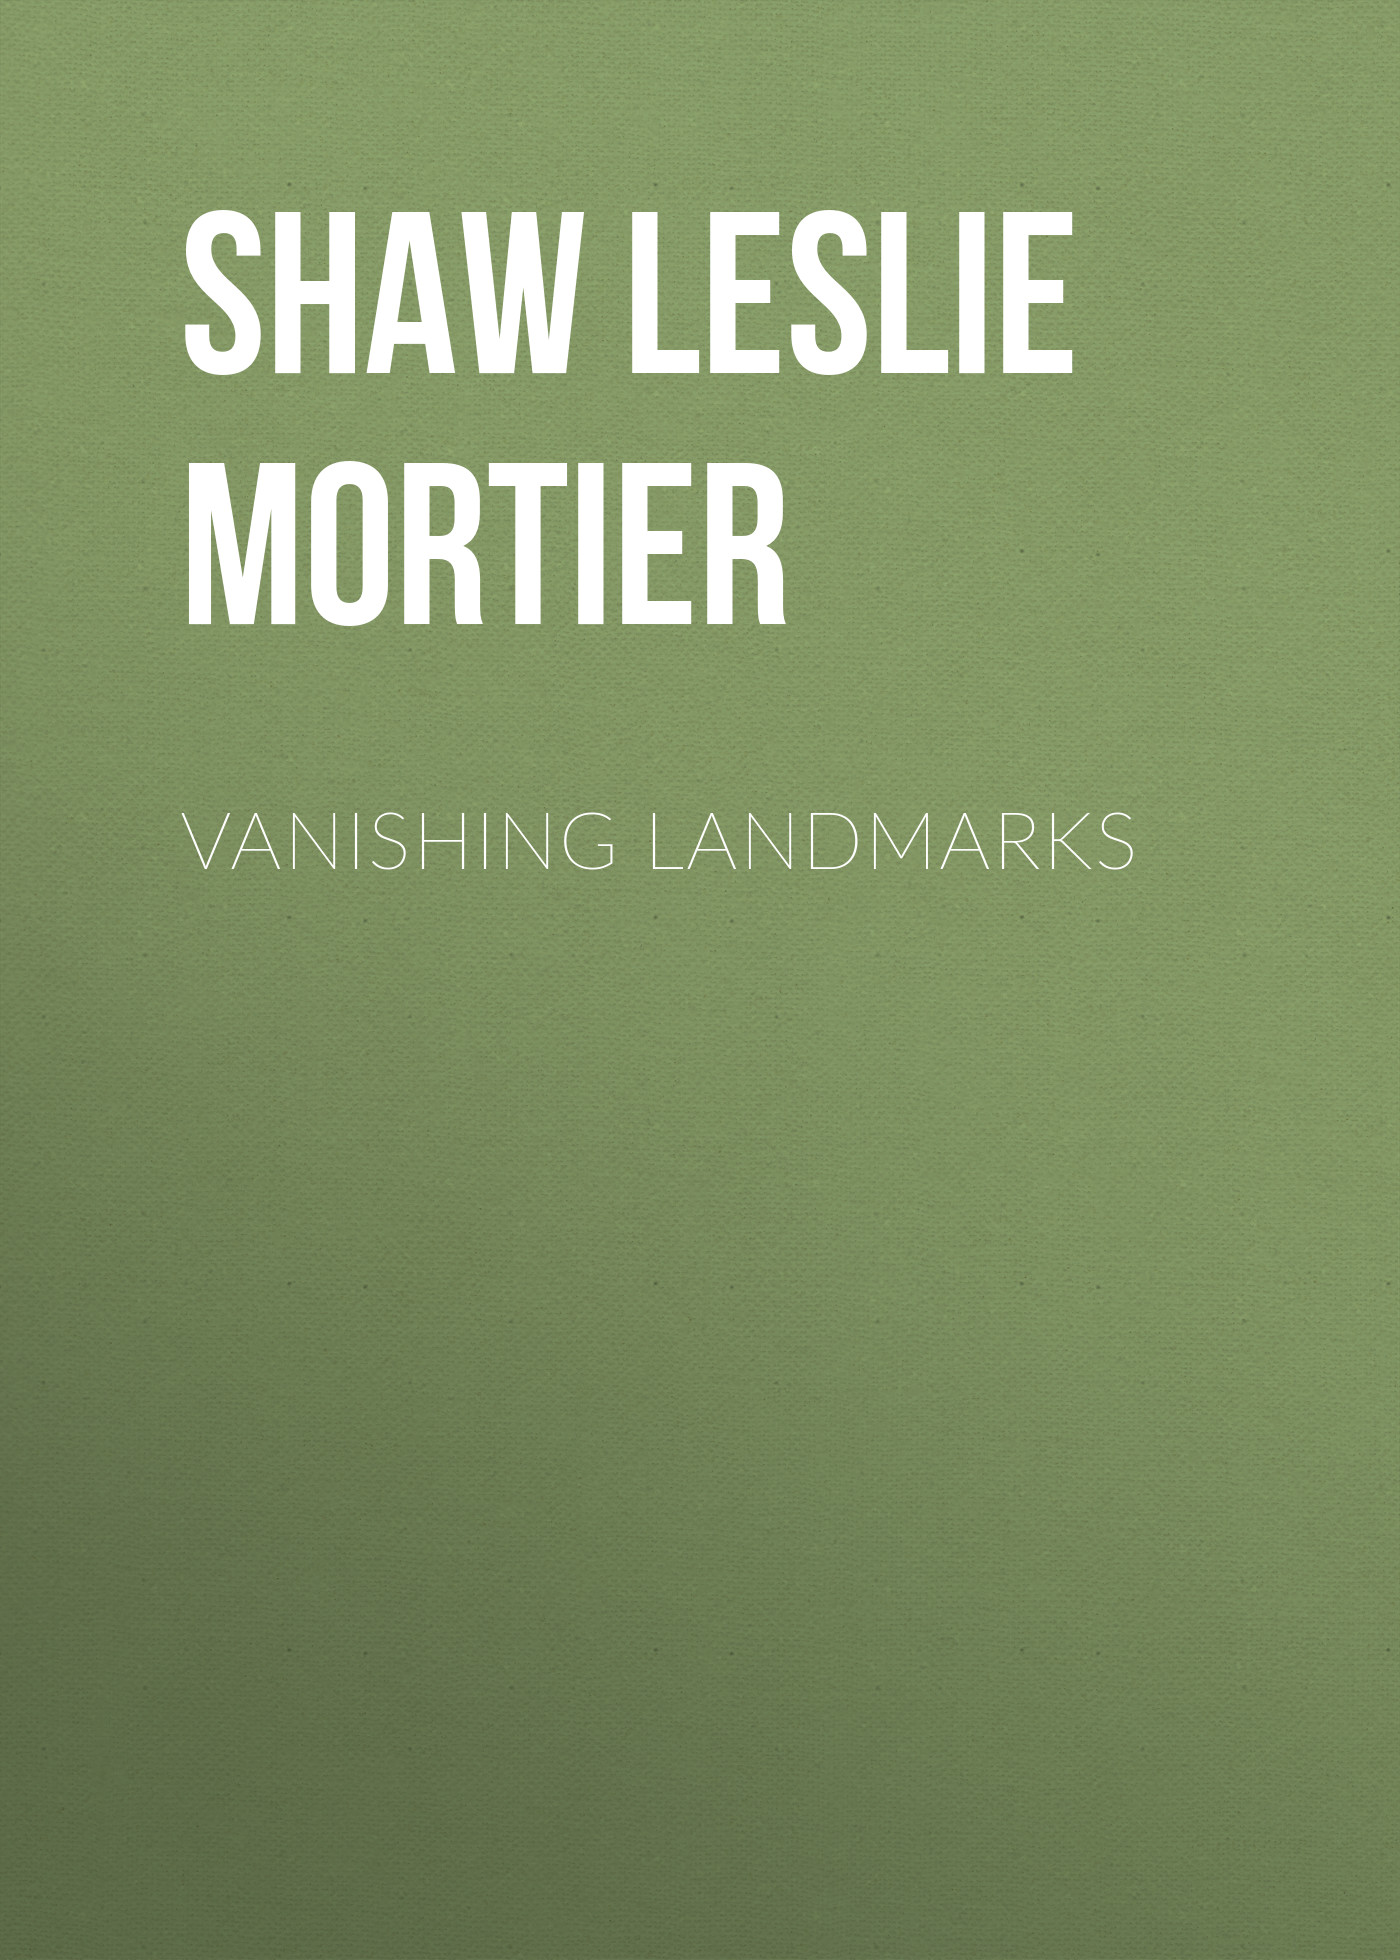 Книга Vanishing Landmarks из серии , созданная Leslie Shaw, может относится к жанру История, Зарубежная старинная литература, Зарубежная классика. Стоимость книги Vanishing Landmarks  с идентификатором 25570255 составляет 0 руб.